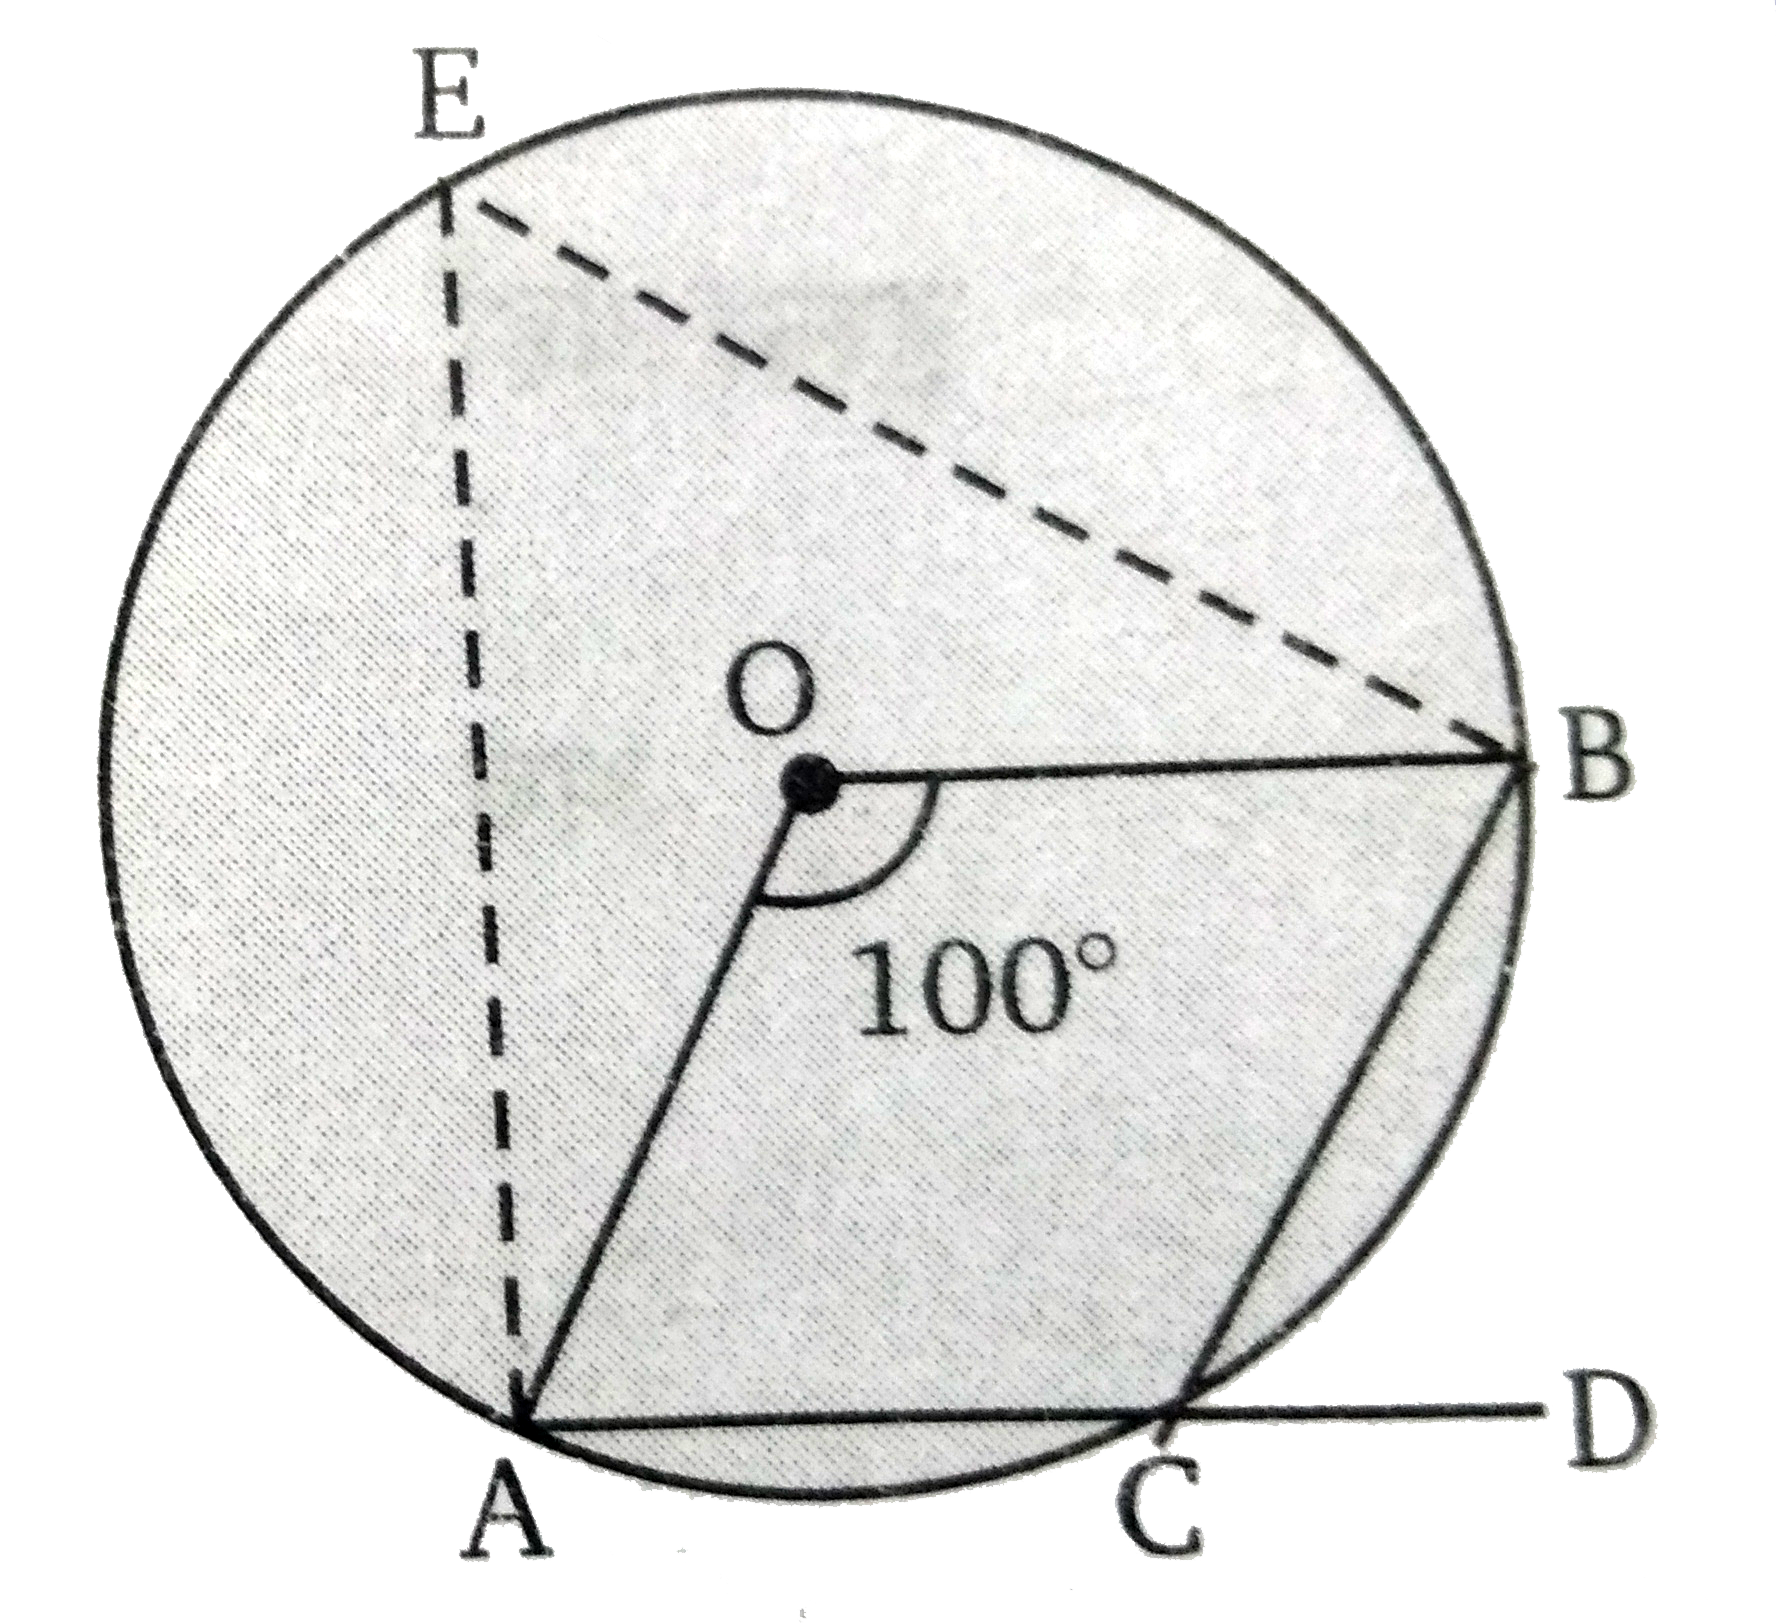 चित्र में O , वृत्त का केन्द्र है यदि angle AOB =  100 ^(@)  तब  angle BCD   का मान ज्ञात कीजिए।